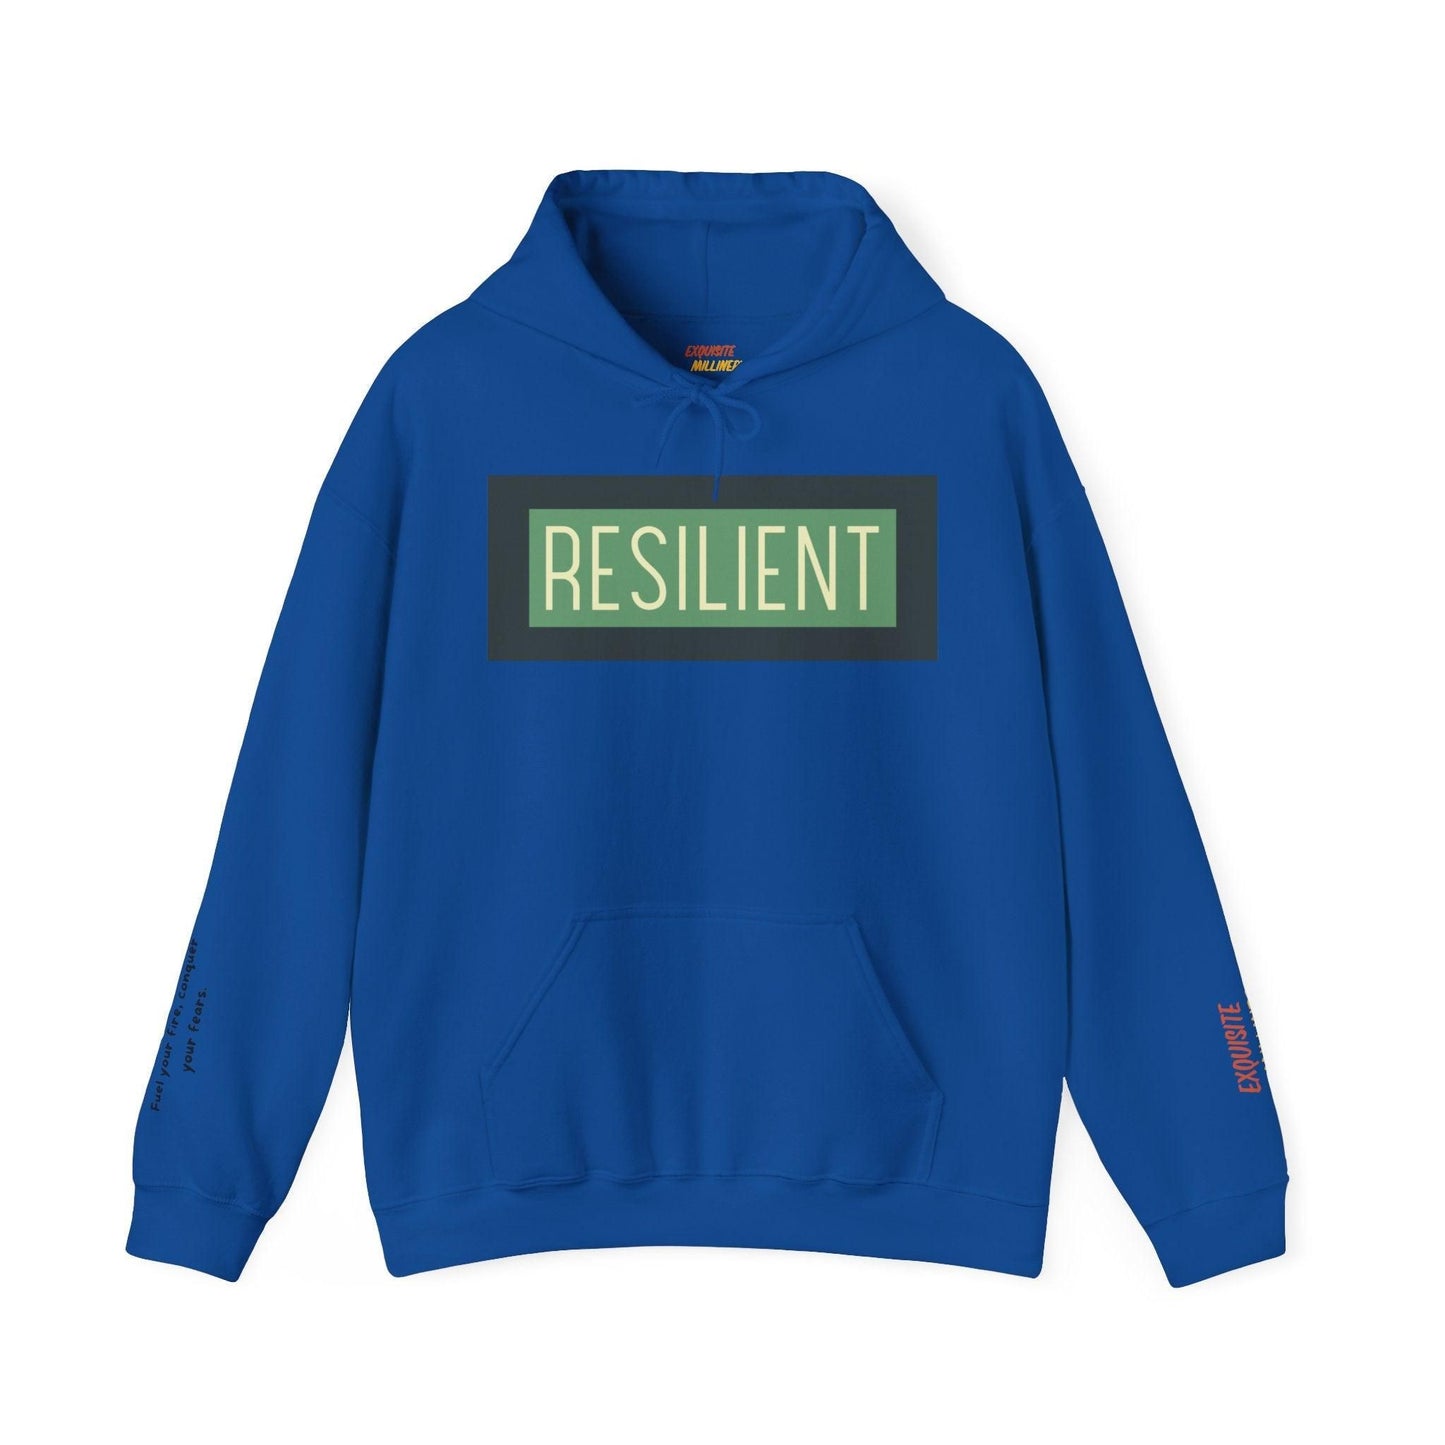 Resilient Unisex Heavy Blend Hooded Sweatshirt Hoodie   